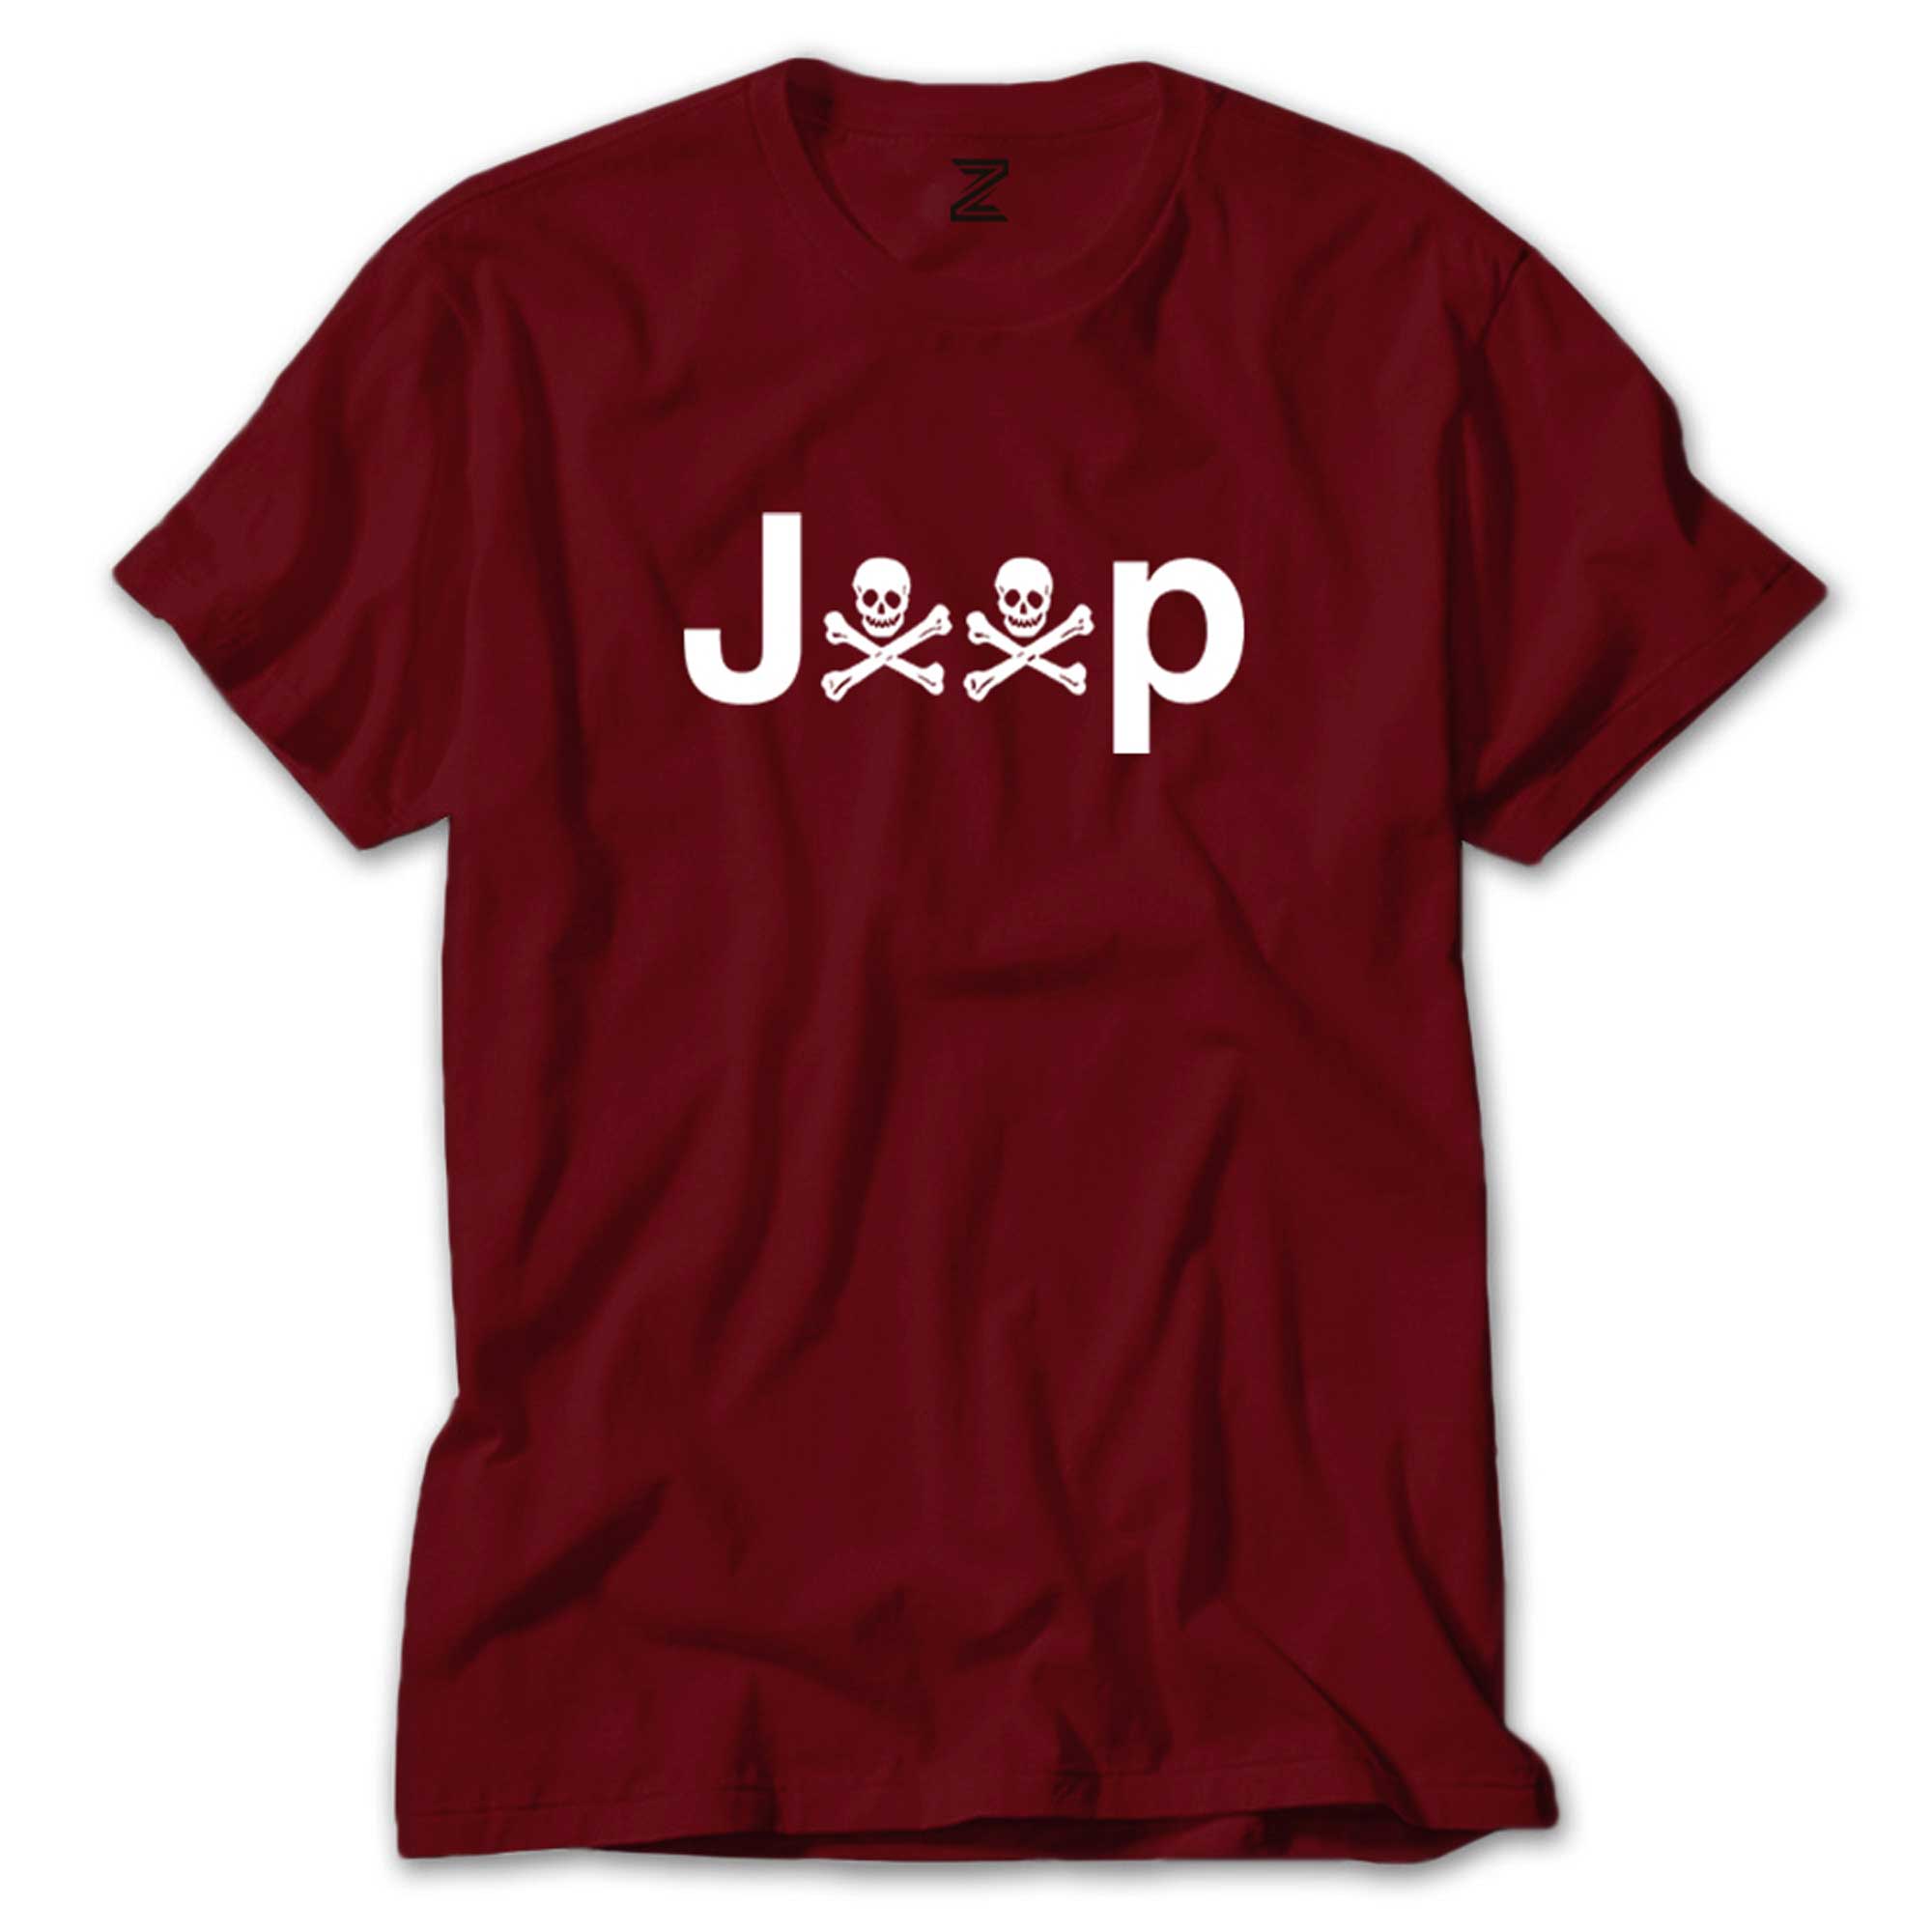 Jeep Kuru kafa Renkli Tişört